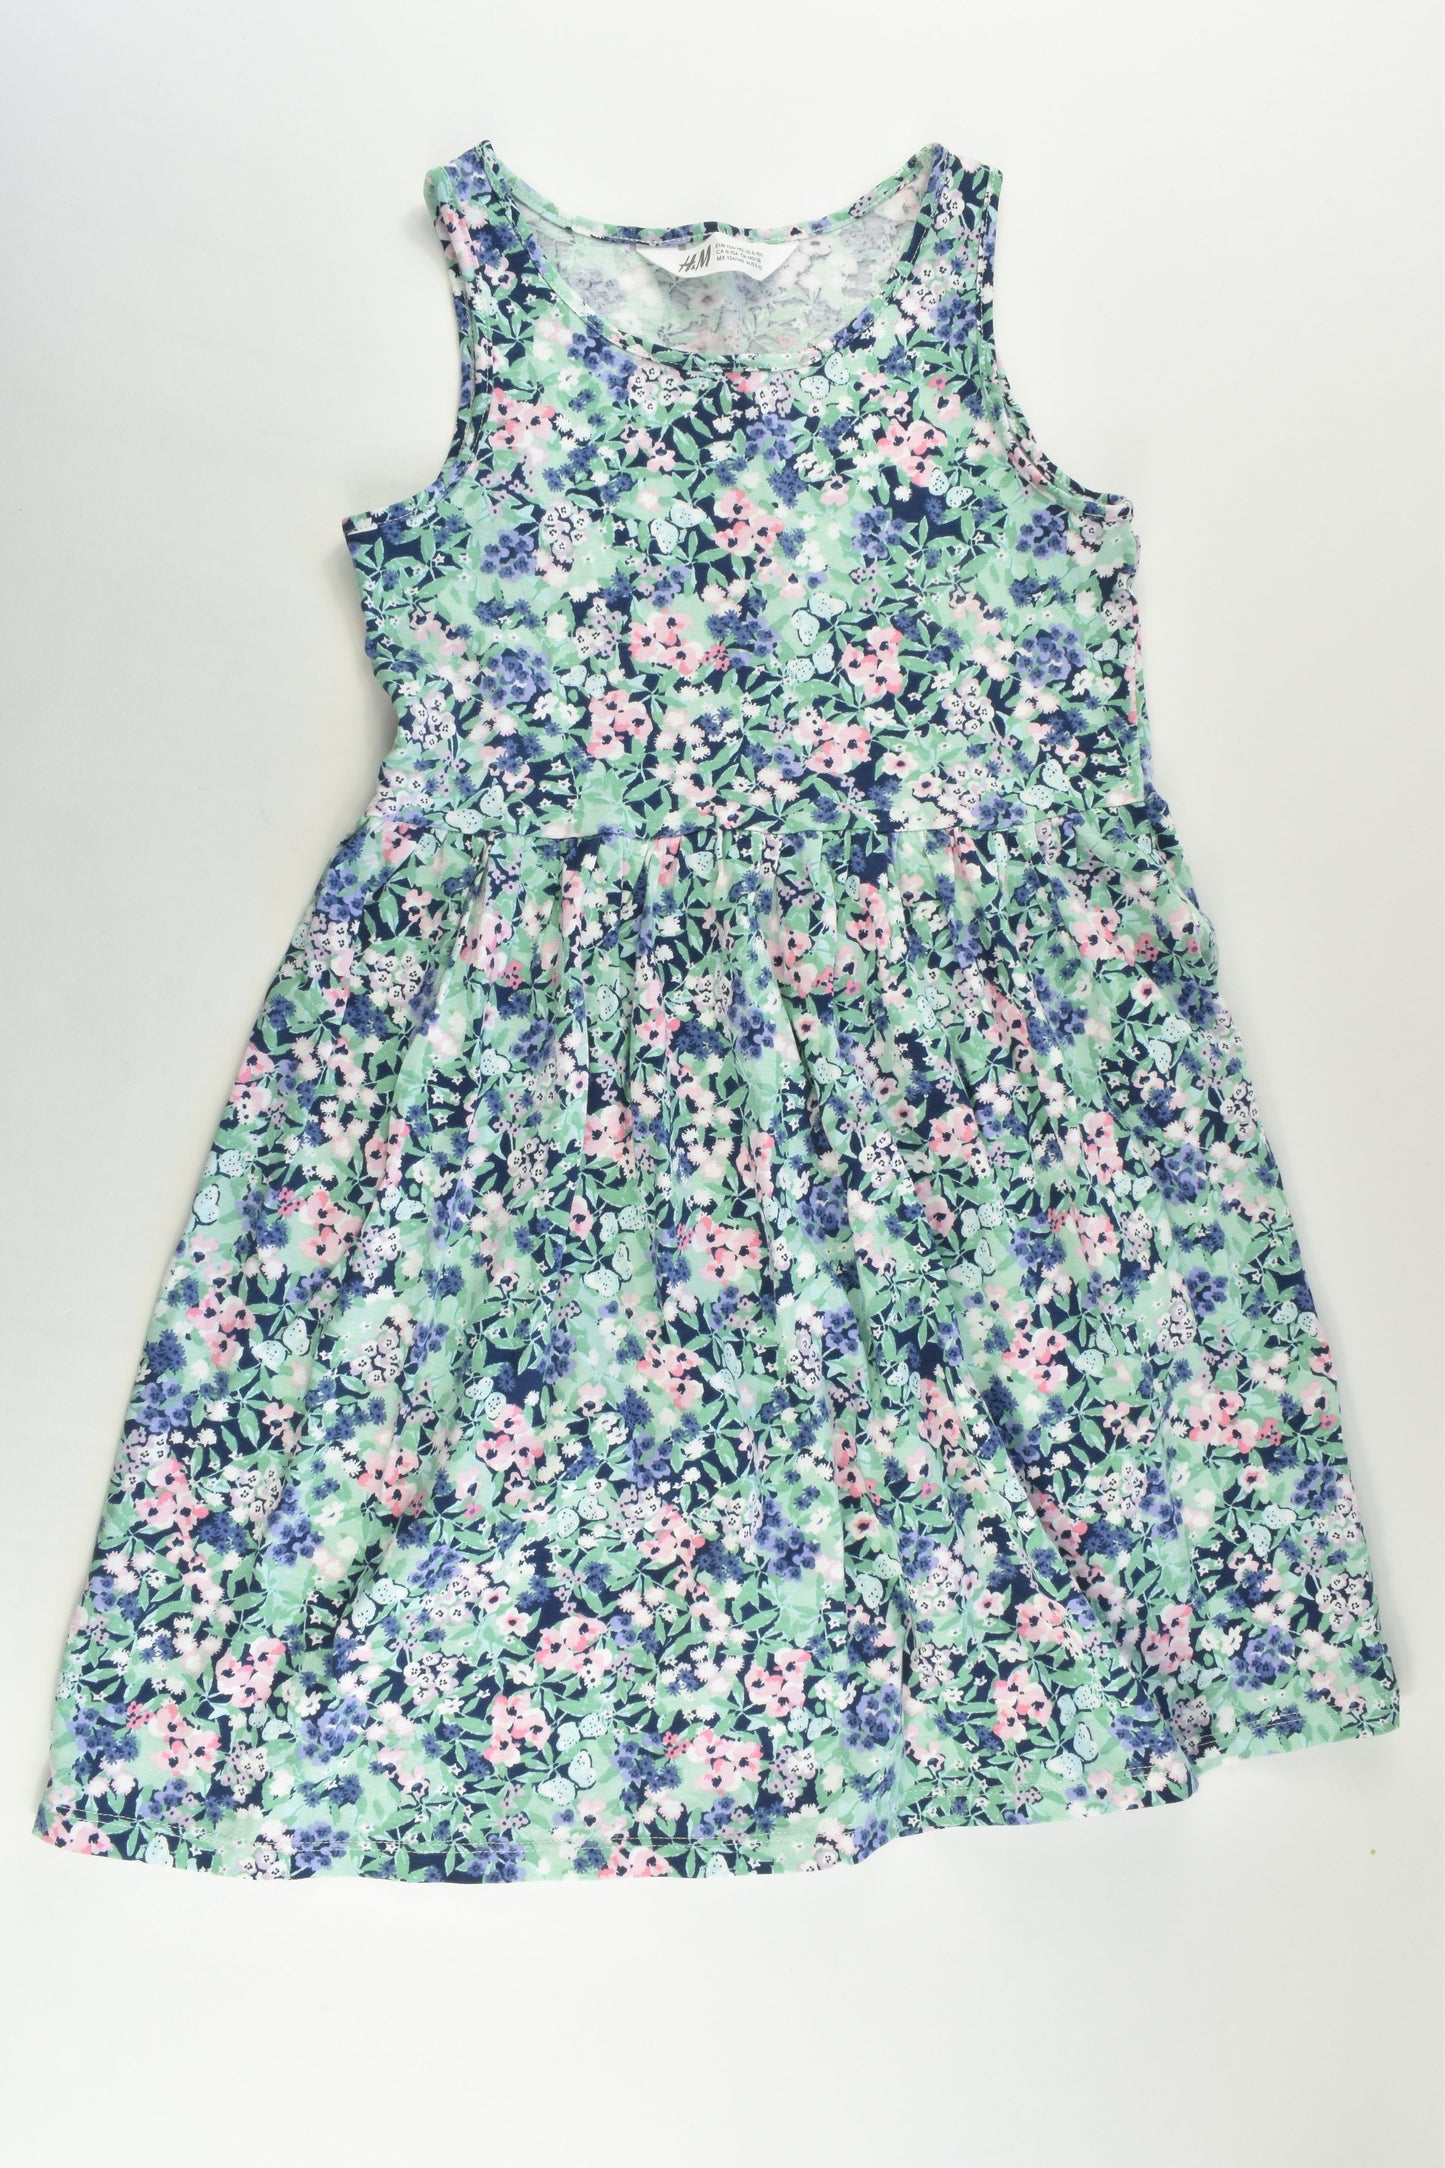 H&M Size 9-10 (134/140 cm) Floral Dress